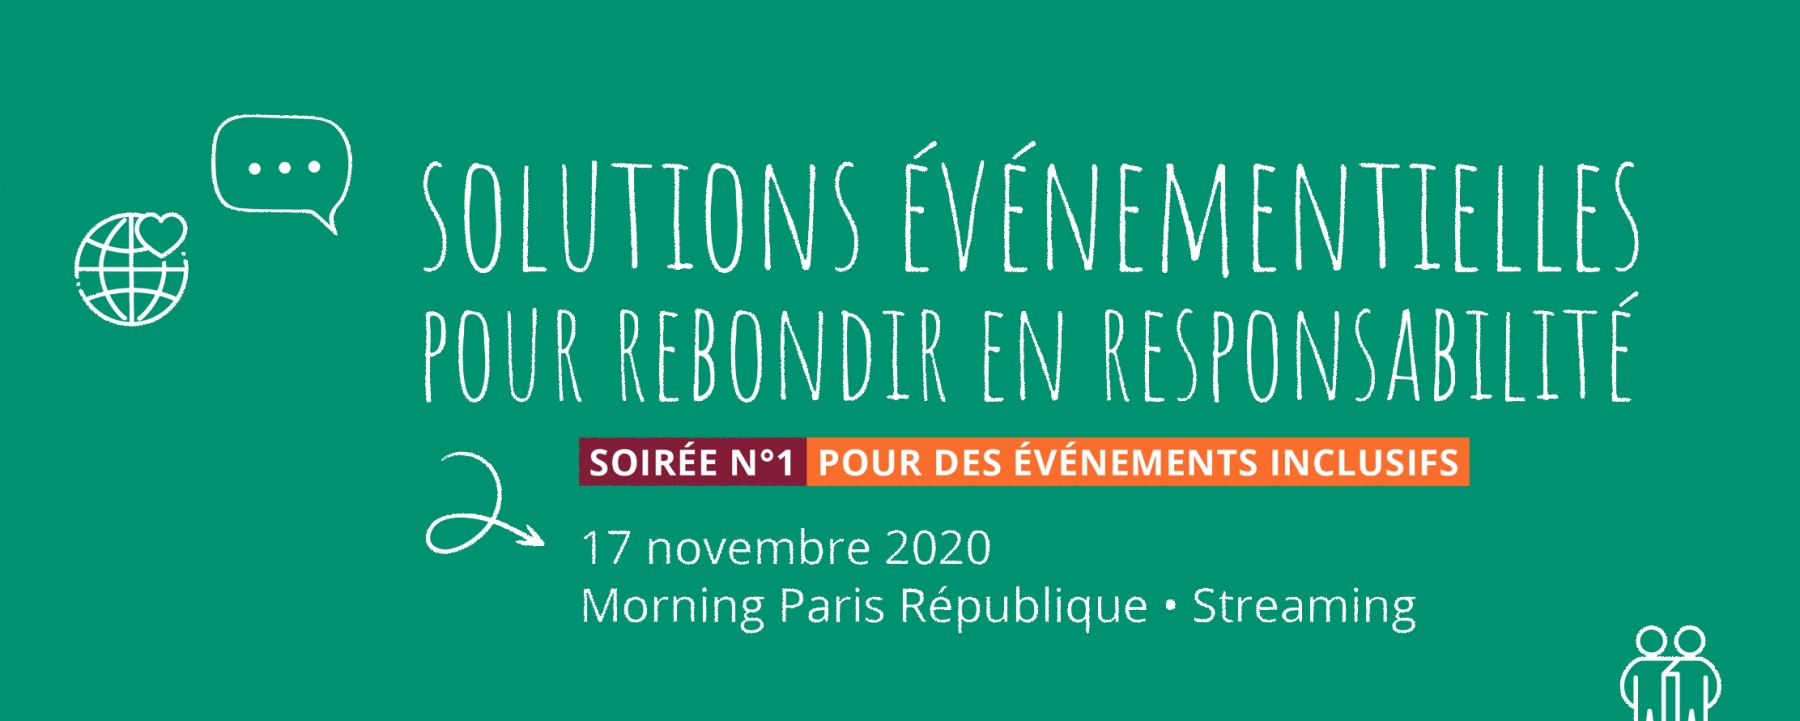 Solutions événementielles pour rebondir en responsabilité, un événement organisé par Green Evénements le 17 novembre